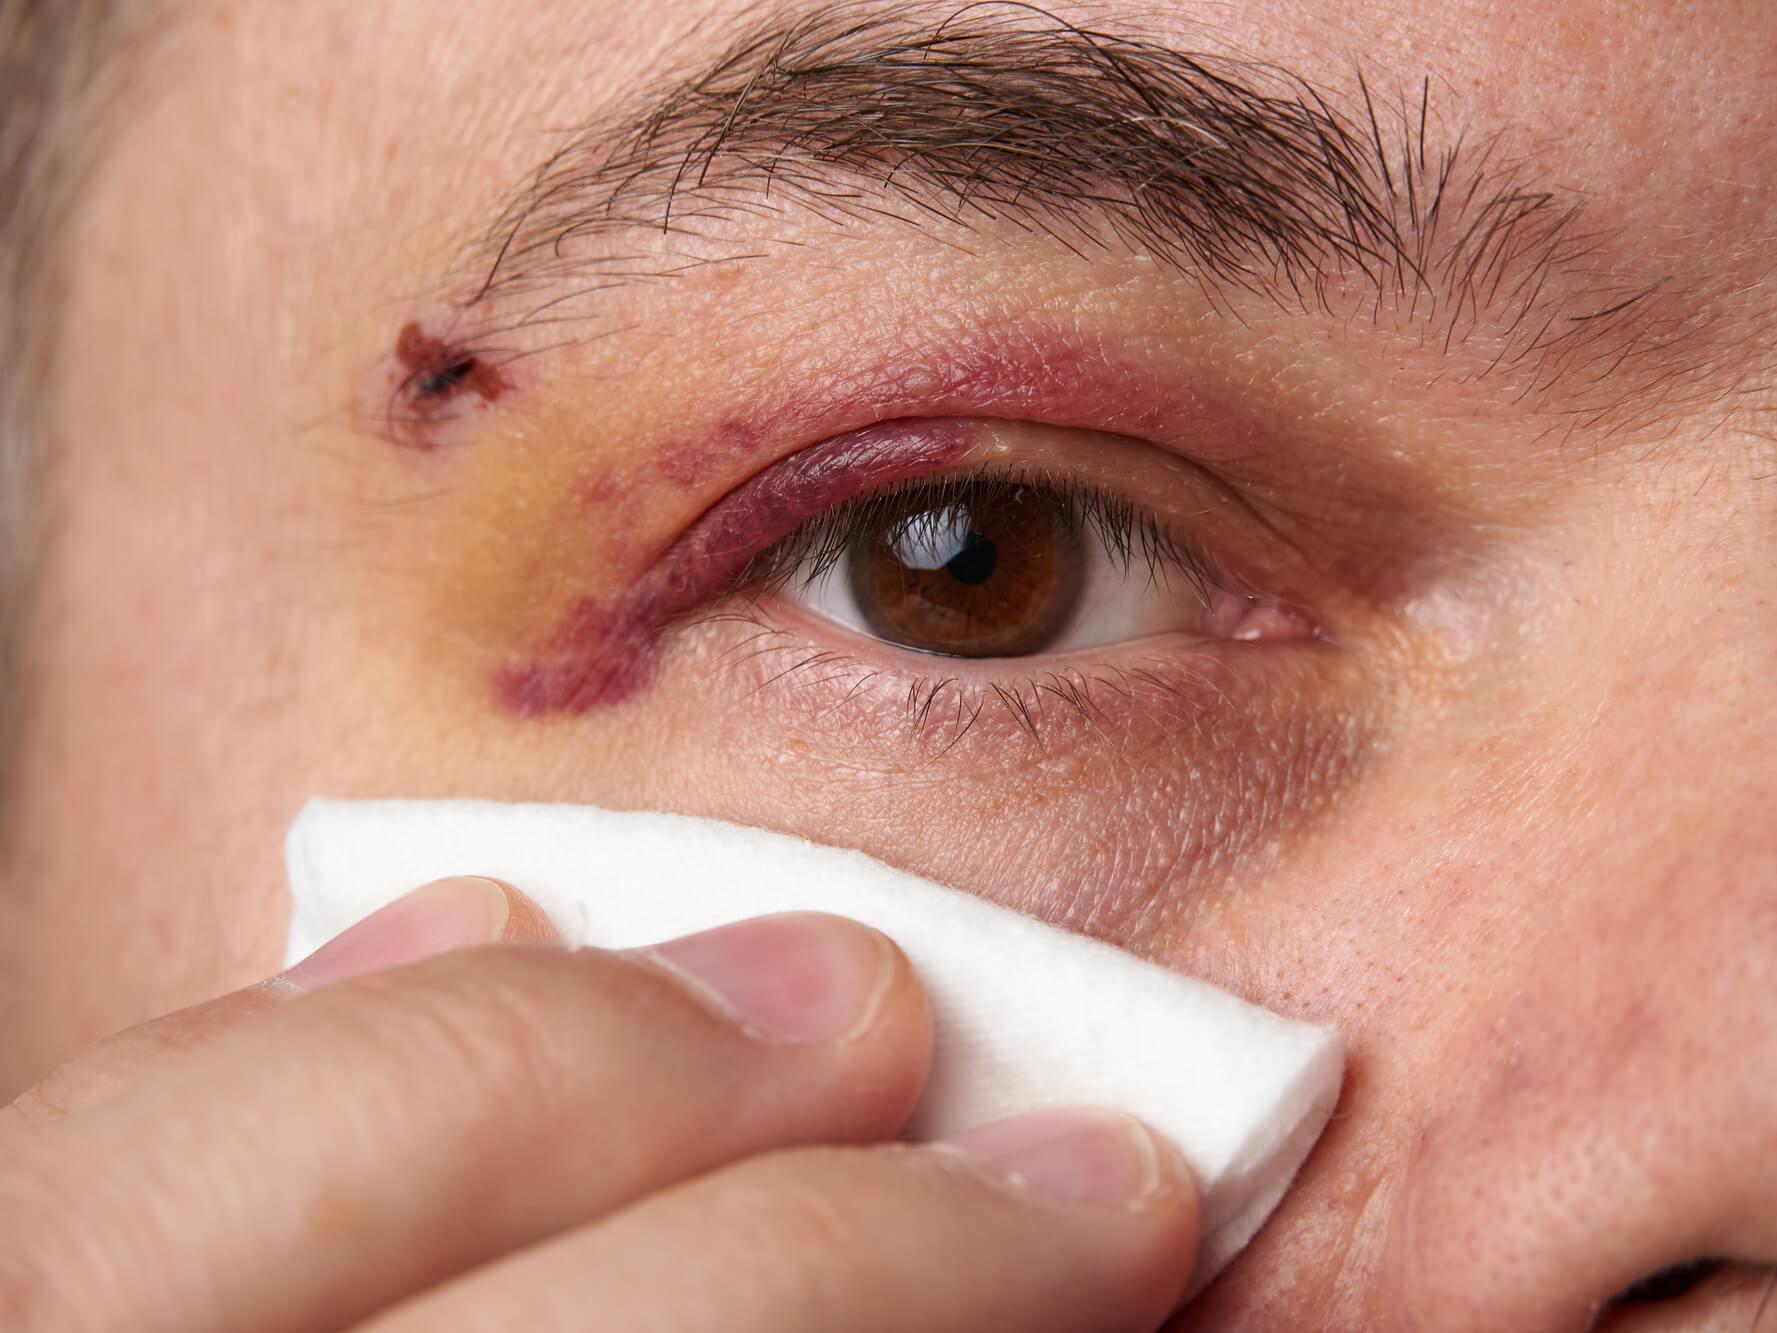 Påføring af et koldt omslag på øjenområdet umiddelbart efter en skade kan reducere hævelse og lindre smerte.